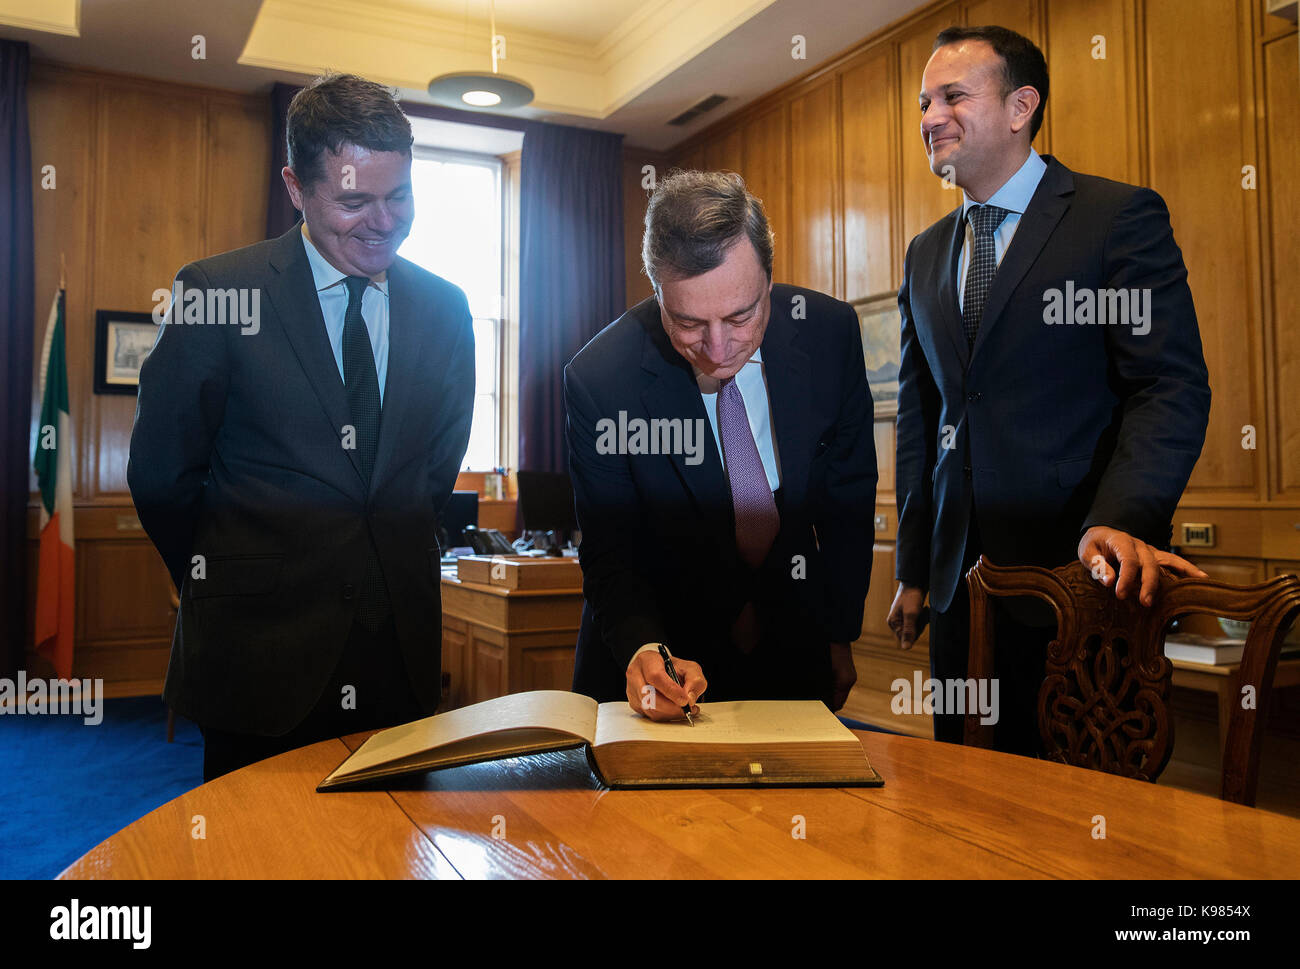 Le président de la Banque centrale européenne Mario Draghi (centre) avec leo varadkar avec an taoiseach (droite) et ministre des Finances paschal donohoe à des édifices gouvernementaux à Dublin. Banque D'Images